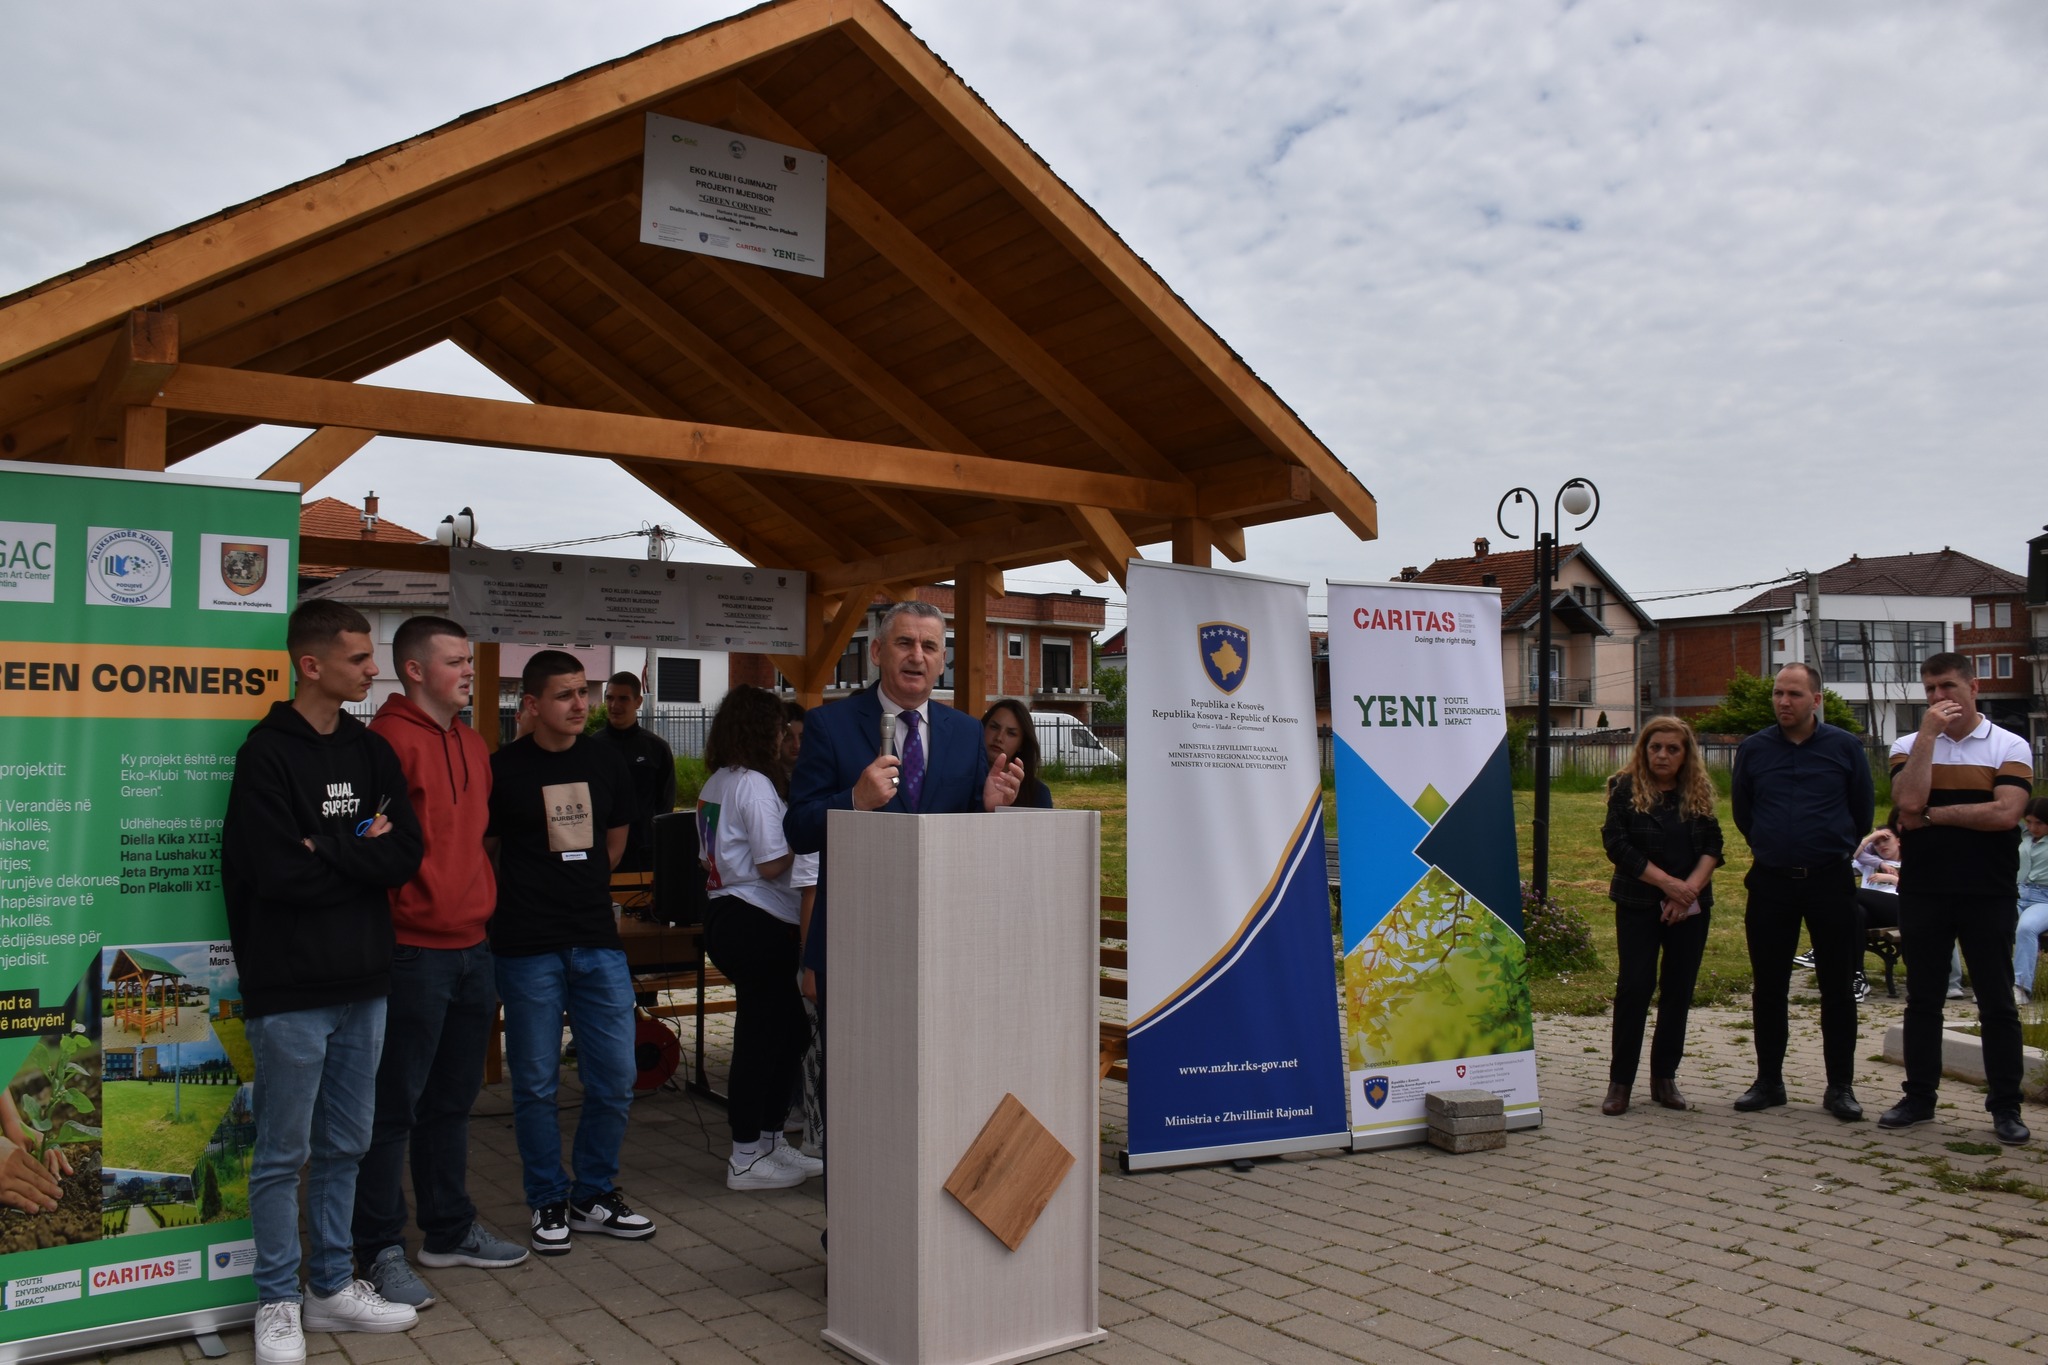 MZHR në bashkëpunim me Caritas Zviceran realizuan Inaugurimi i projektit Mjedisor në Gjimnazin “Aleksandër Xhuvani”– Podujevë.